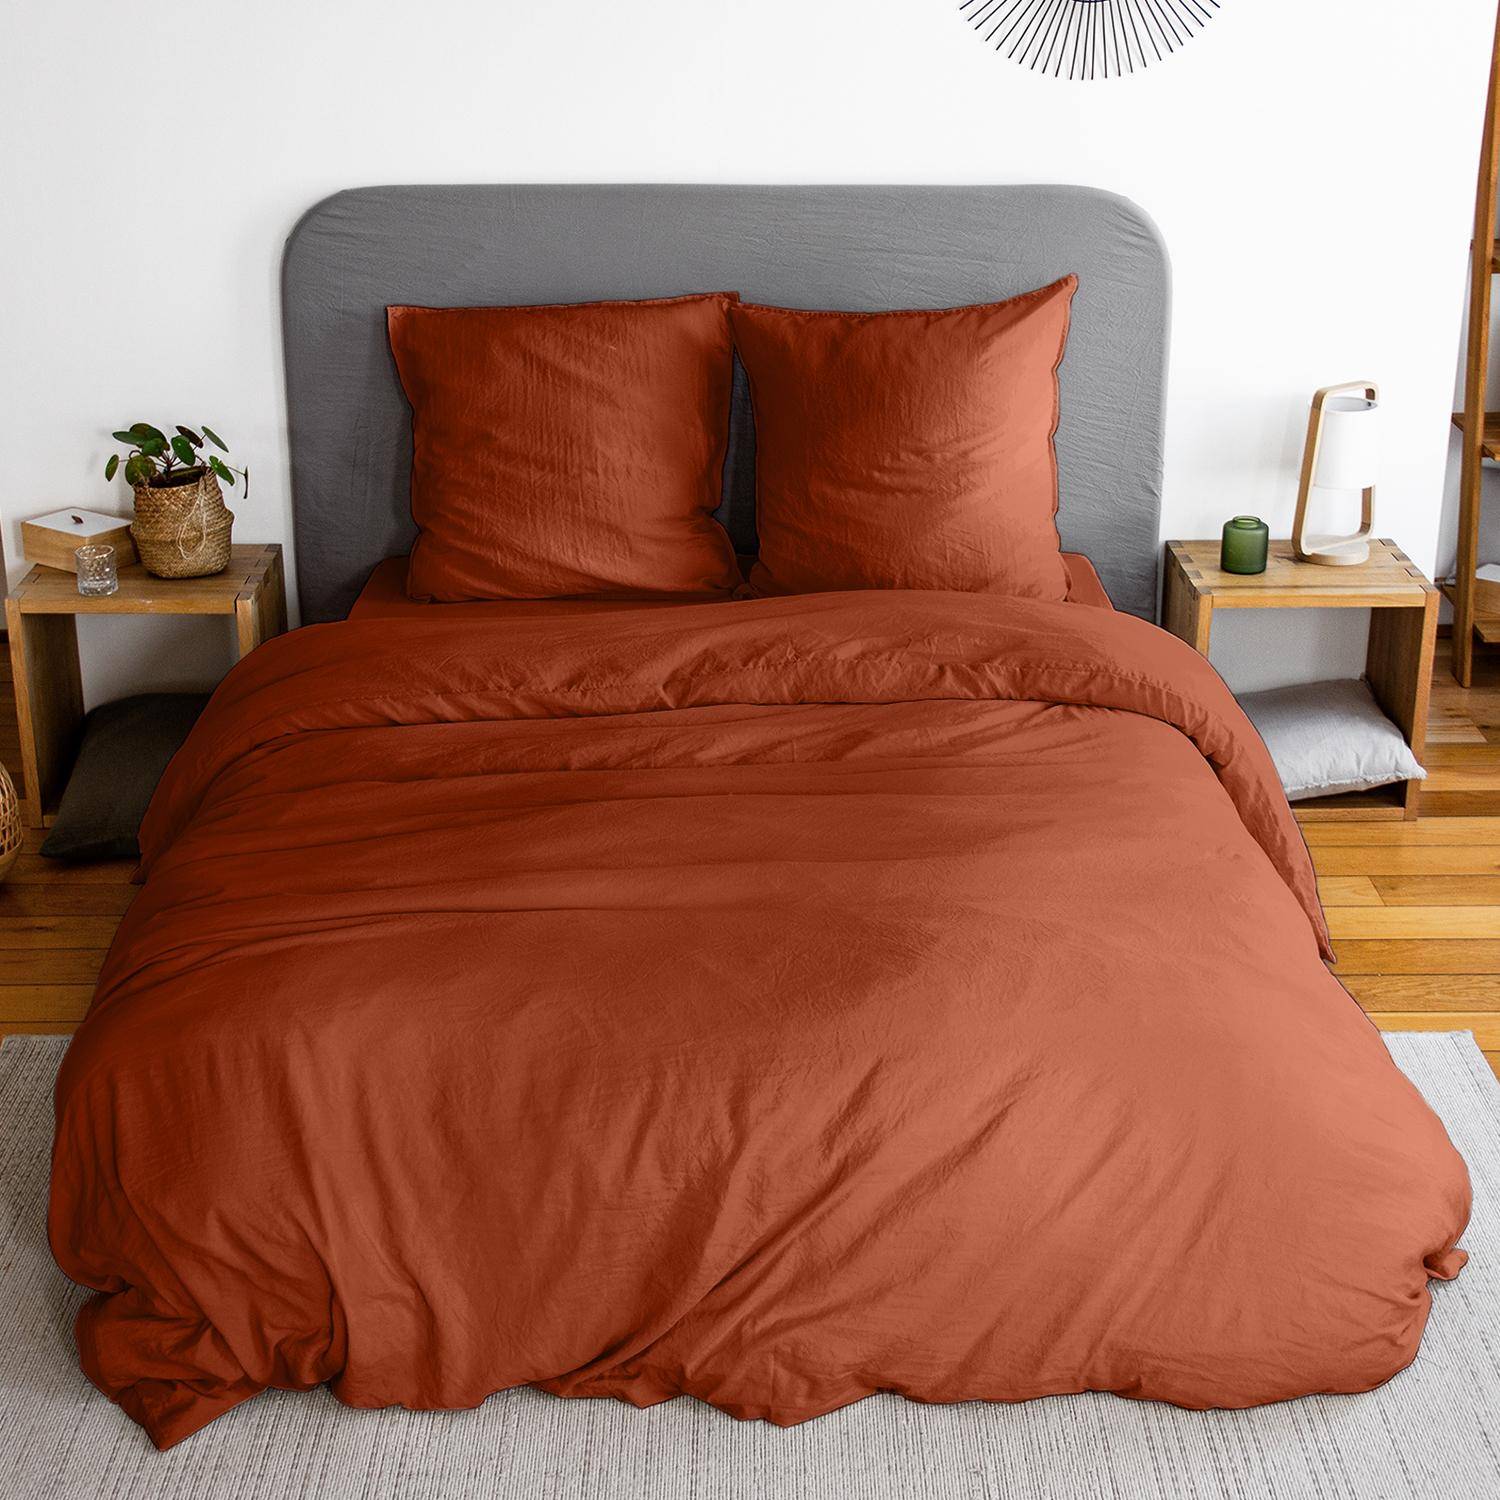 Parure de lit en microfibre lavée, terracotta, 240 x 220cm pour lit 2 places avec 1 housse de couette et 2 taies d'oreillers Photo1